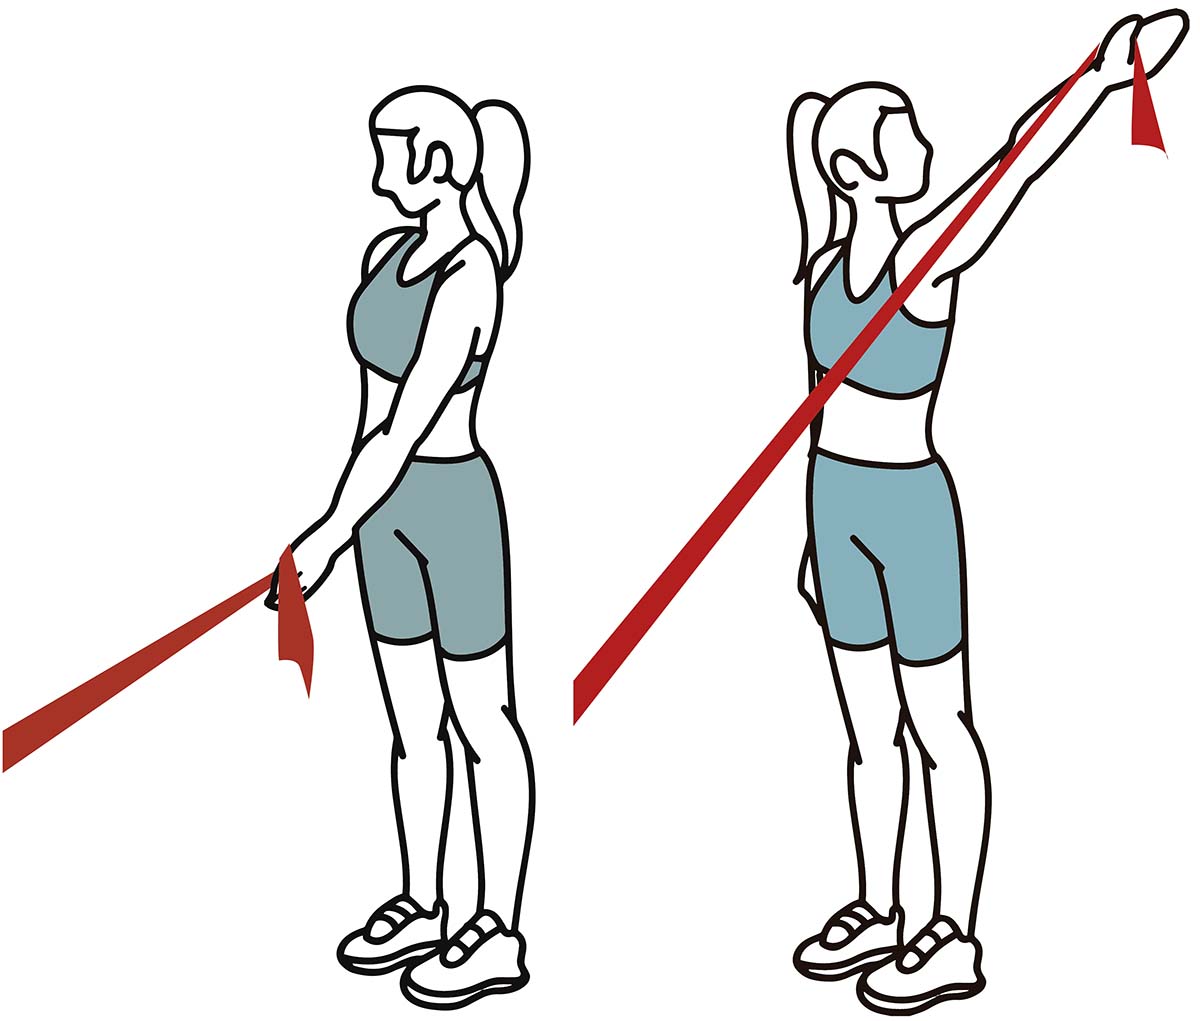 Séance d'entraînement de physiothérapie pour les épaules : flexion diagonale de l'épaule